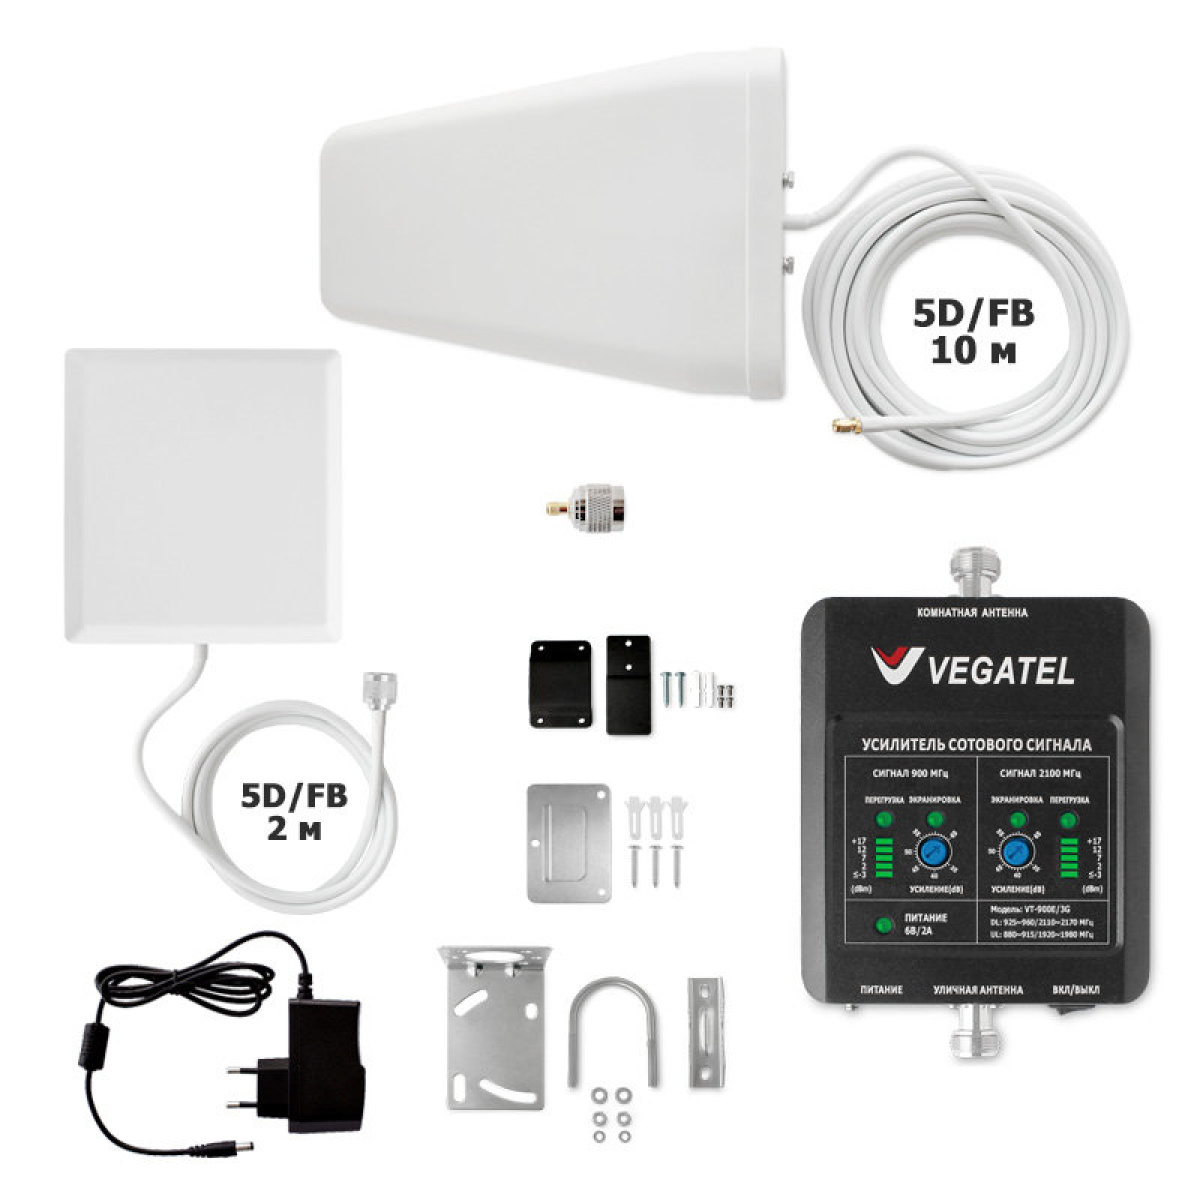 Комплект усиления сотовой связи Vegatel VT-900E/3G-kit (дом, LED) - купить недорого с доставкой в Москве 10